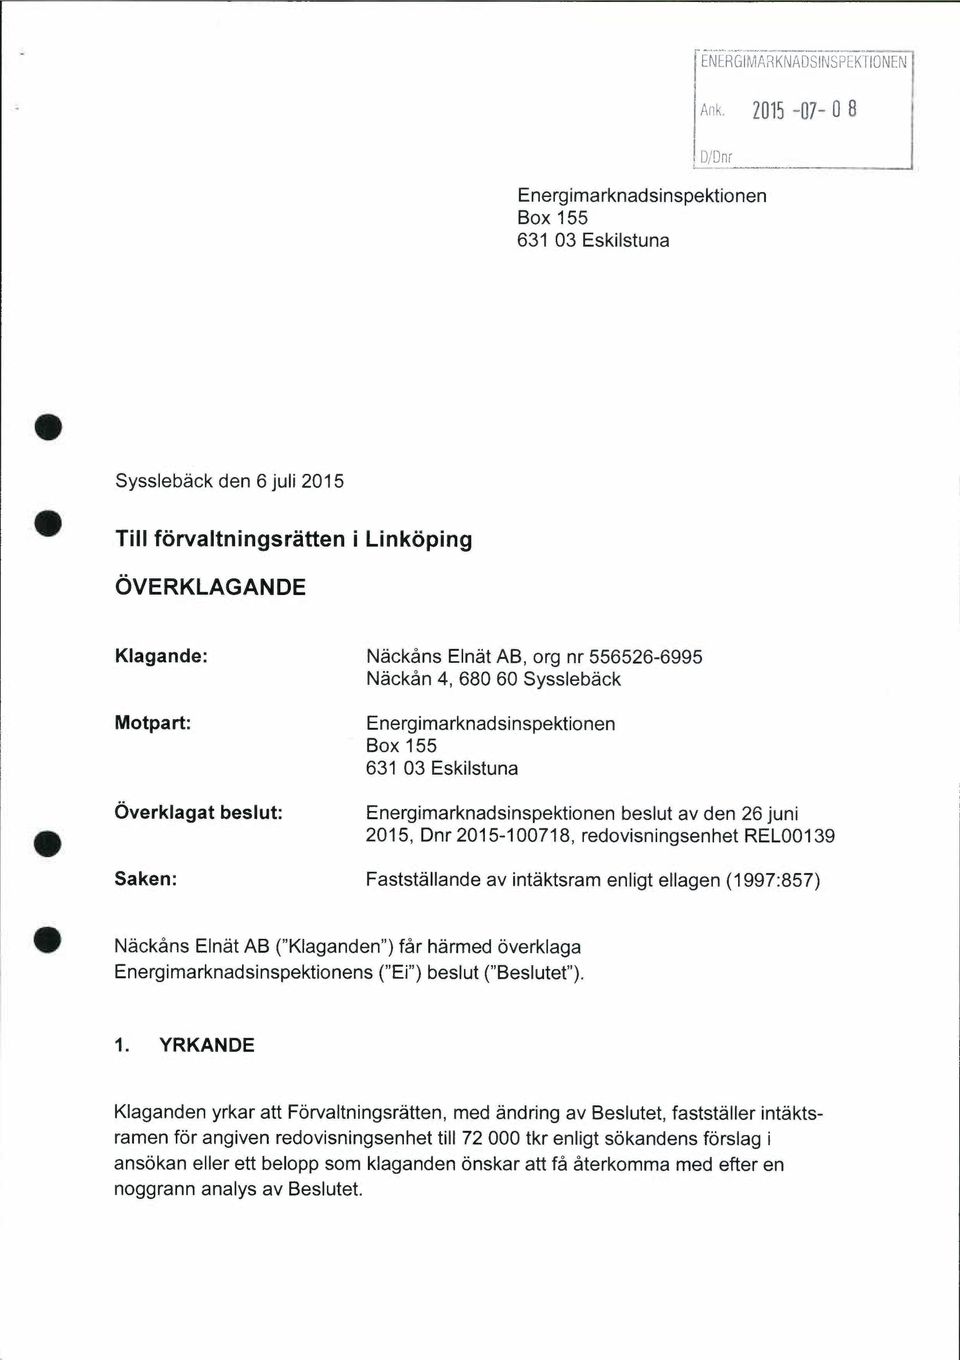 Syssleback Motpart: Overklagat beslut: Energimarknadsinspektionen Box 155 631 03 Eskilstuna Energimarknadsinspektionen beslut av den 26 juni 2015, Dnr 2015-100718, redovisningsenhet REL00139 Saken: